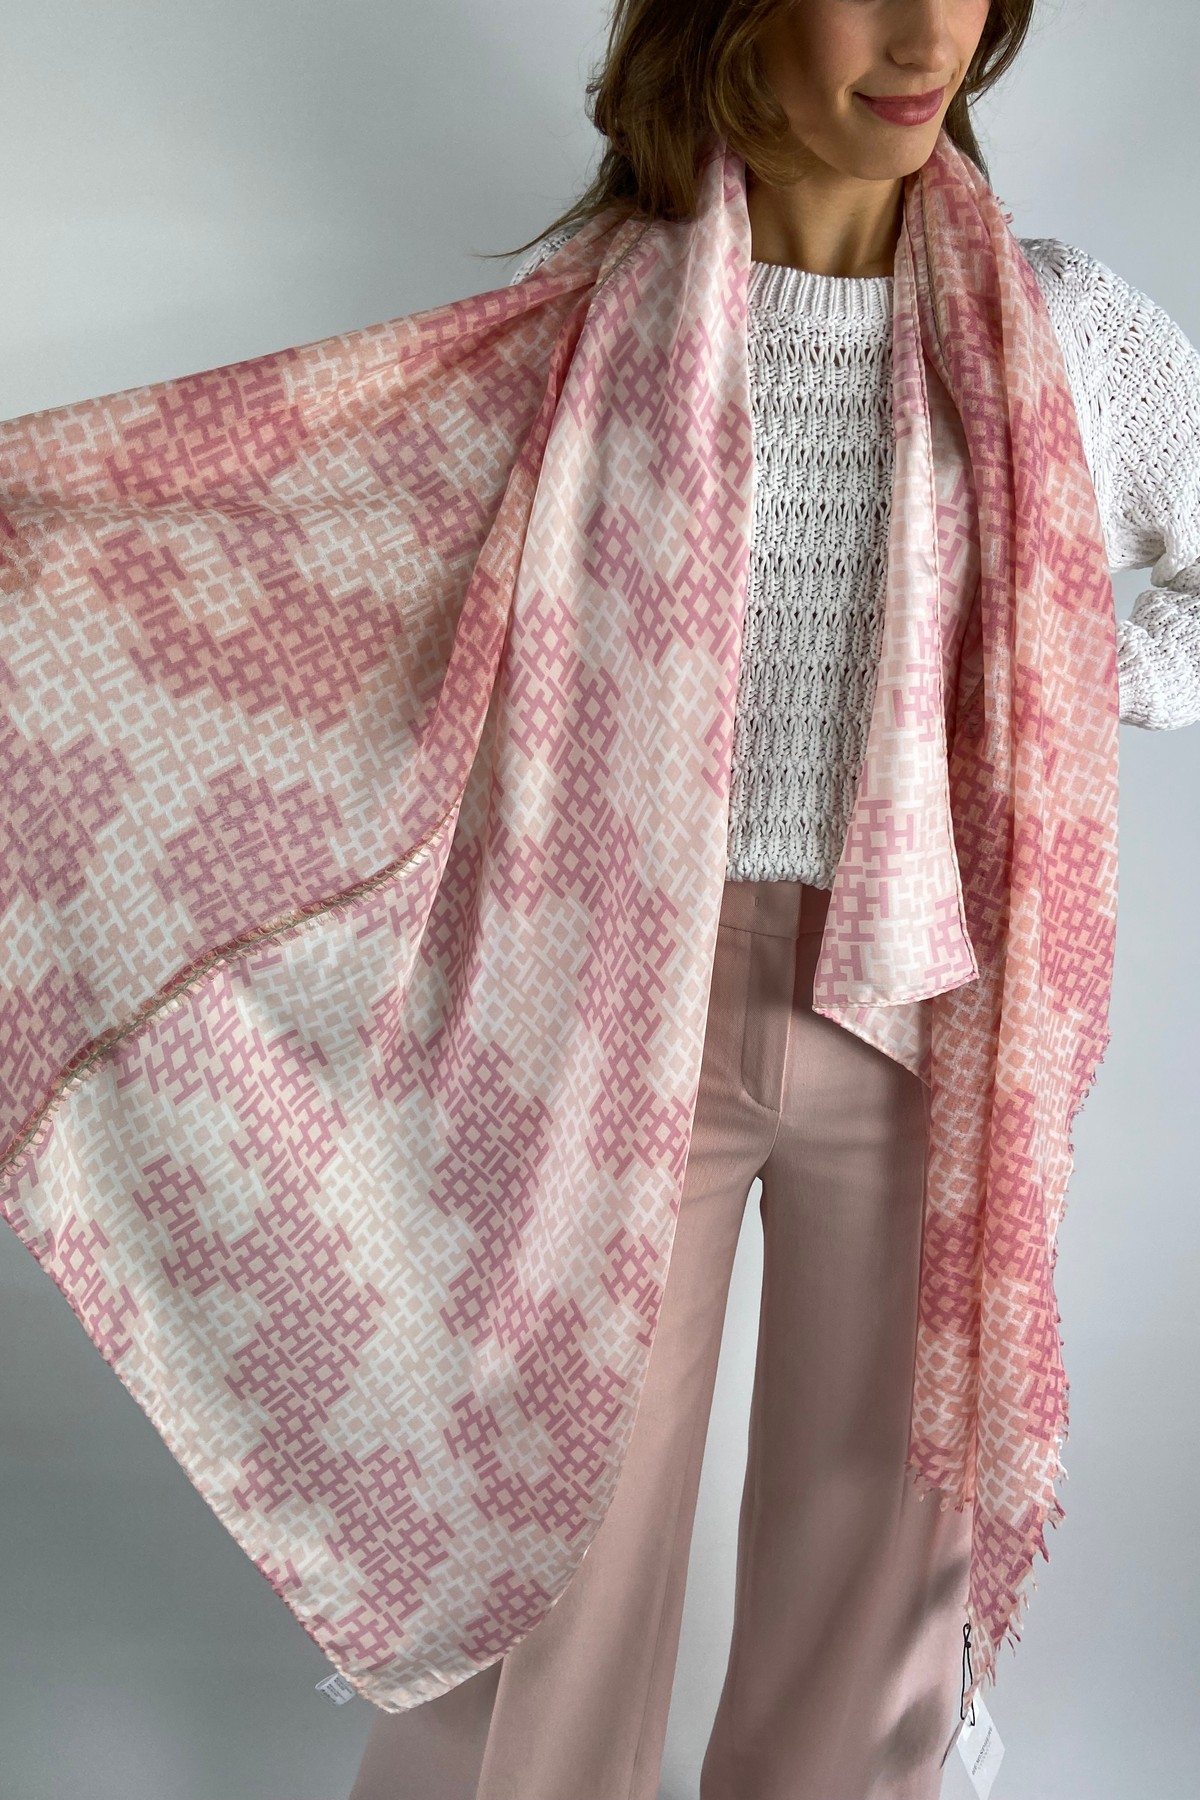 Hemisphere - IMIXALIKIBI - Sjaal H-print zijde wol roze - uitverkocht